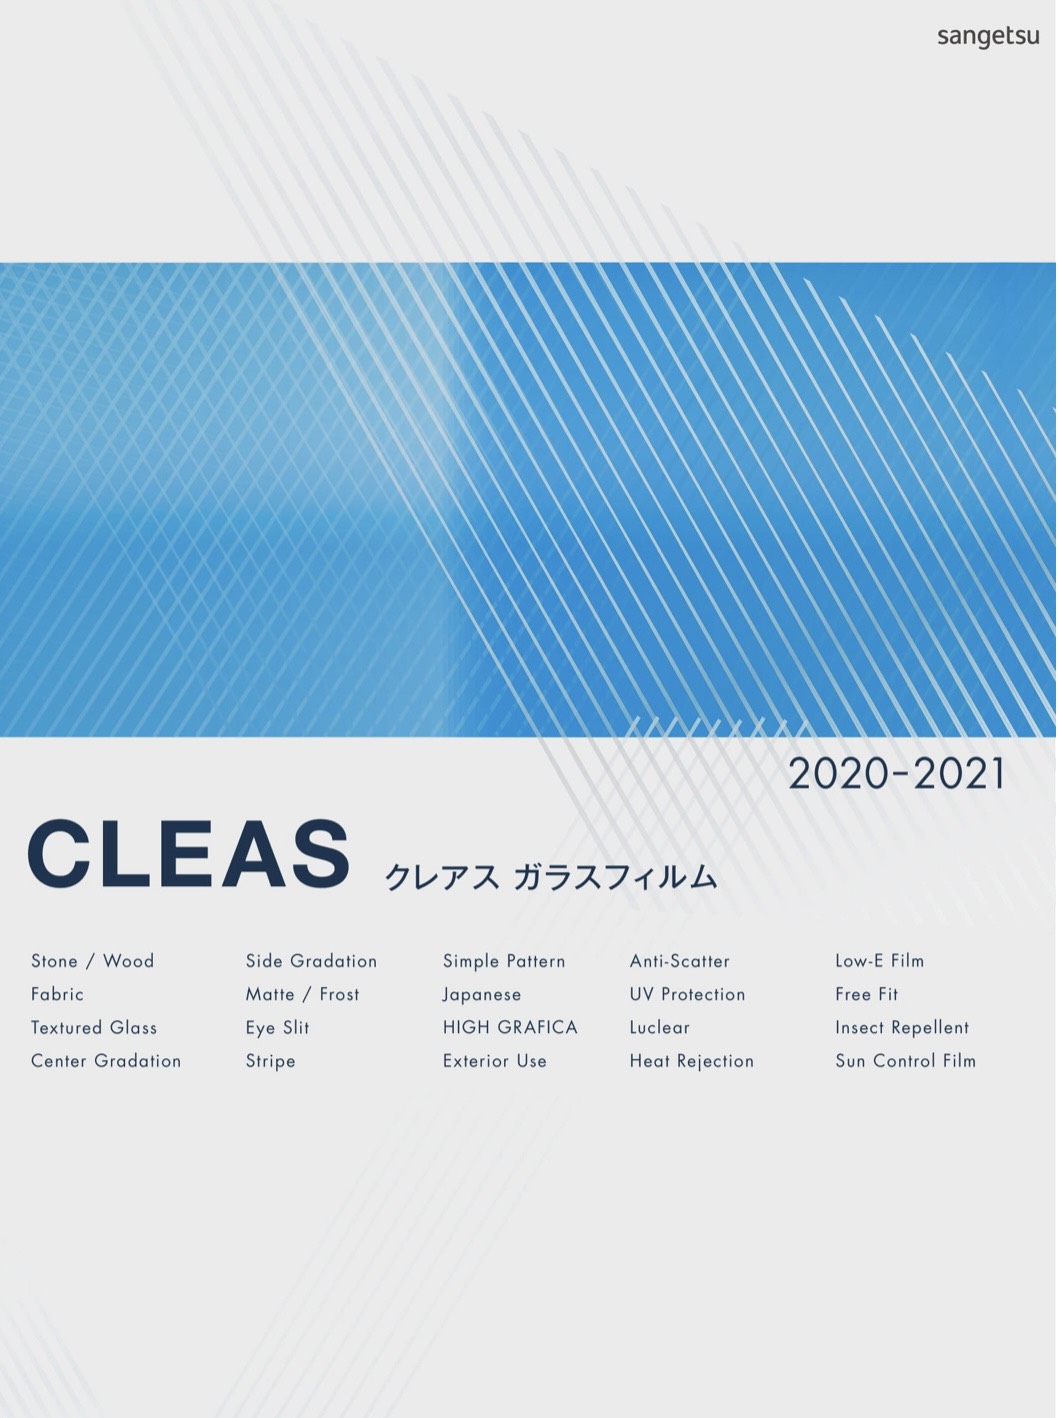 Film dán kính Nhật Bản Cleas 2020-2021